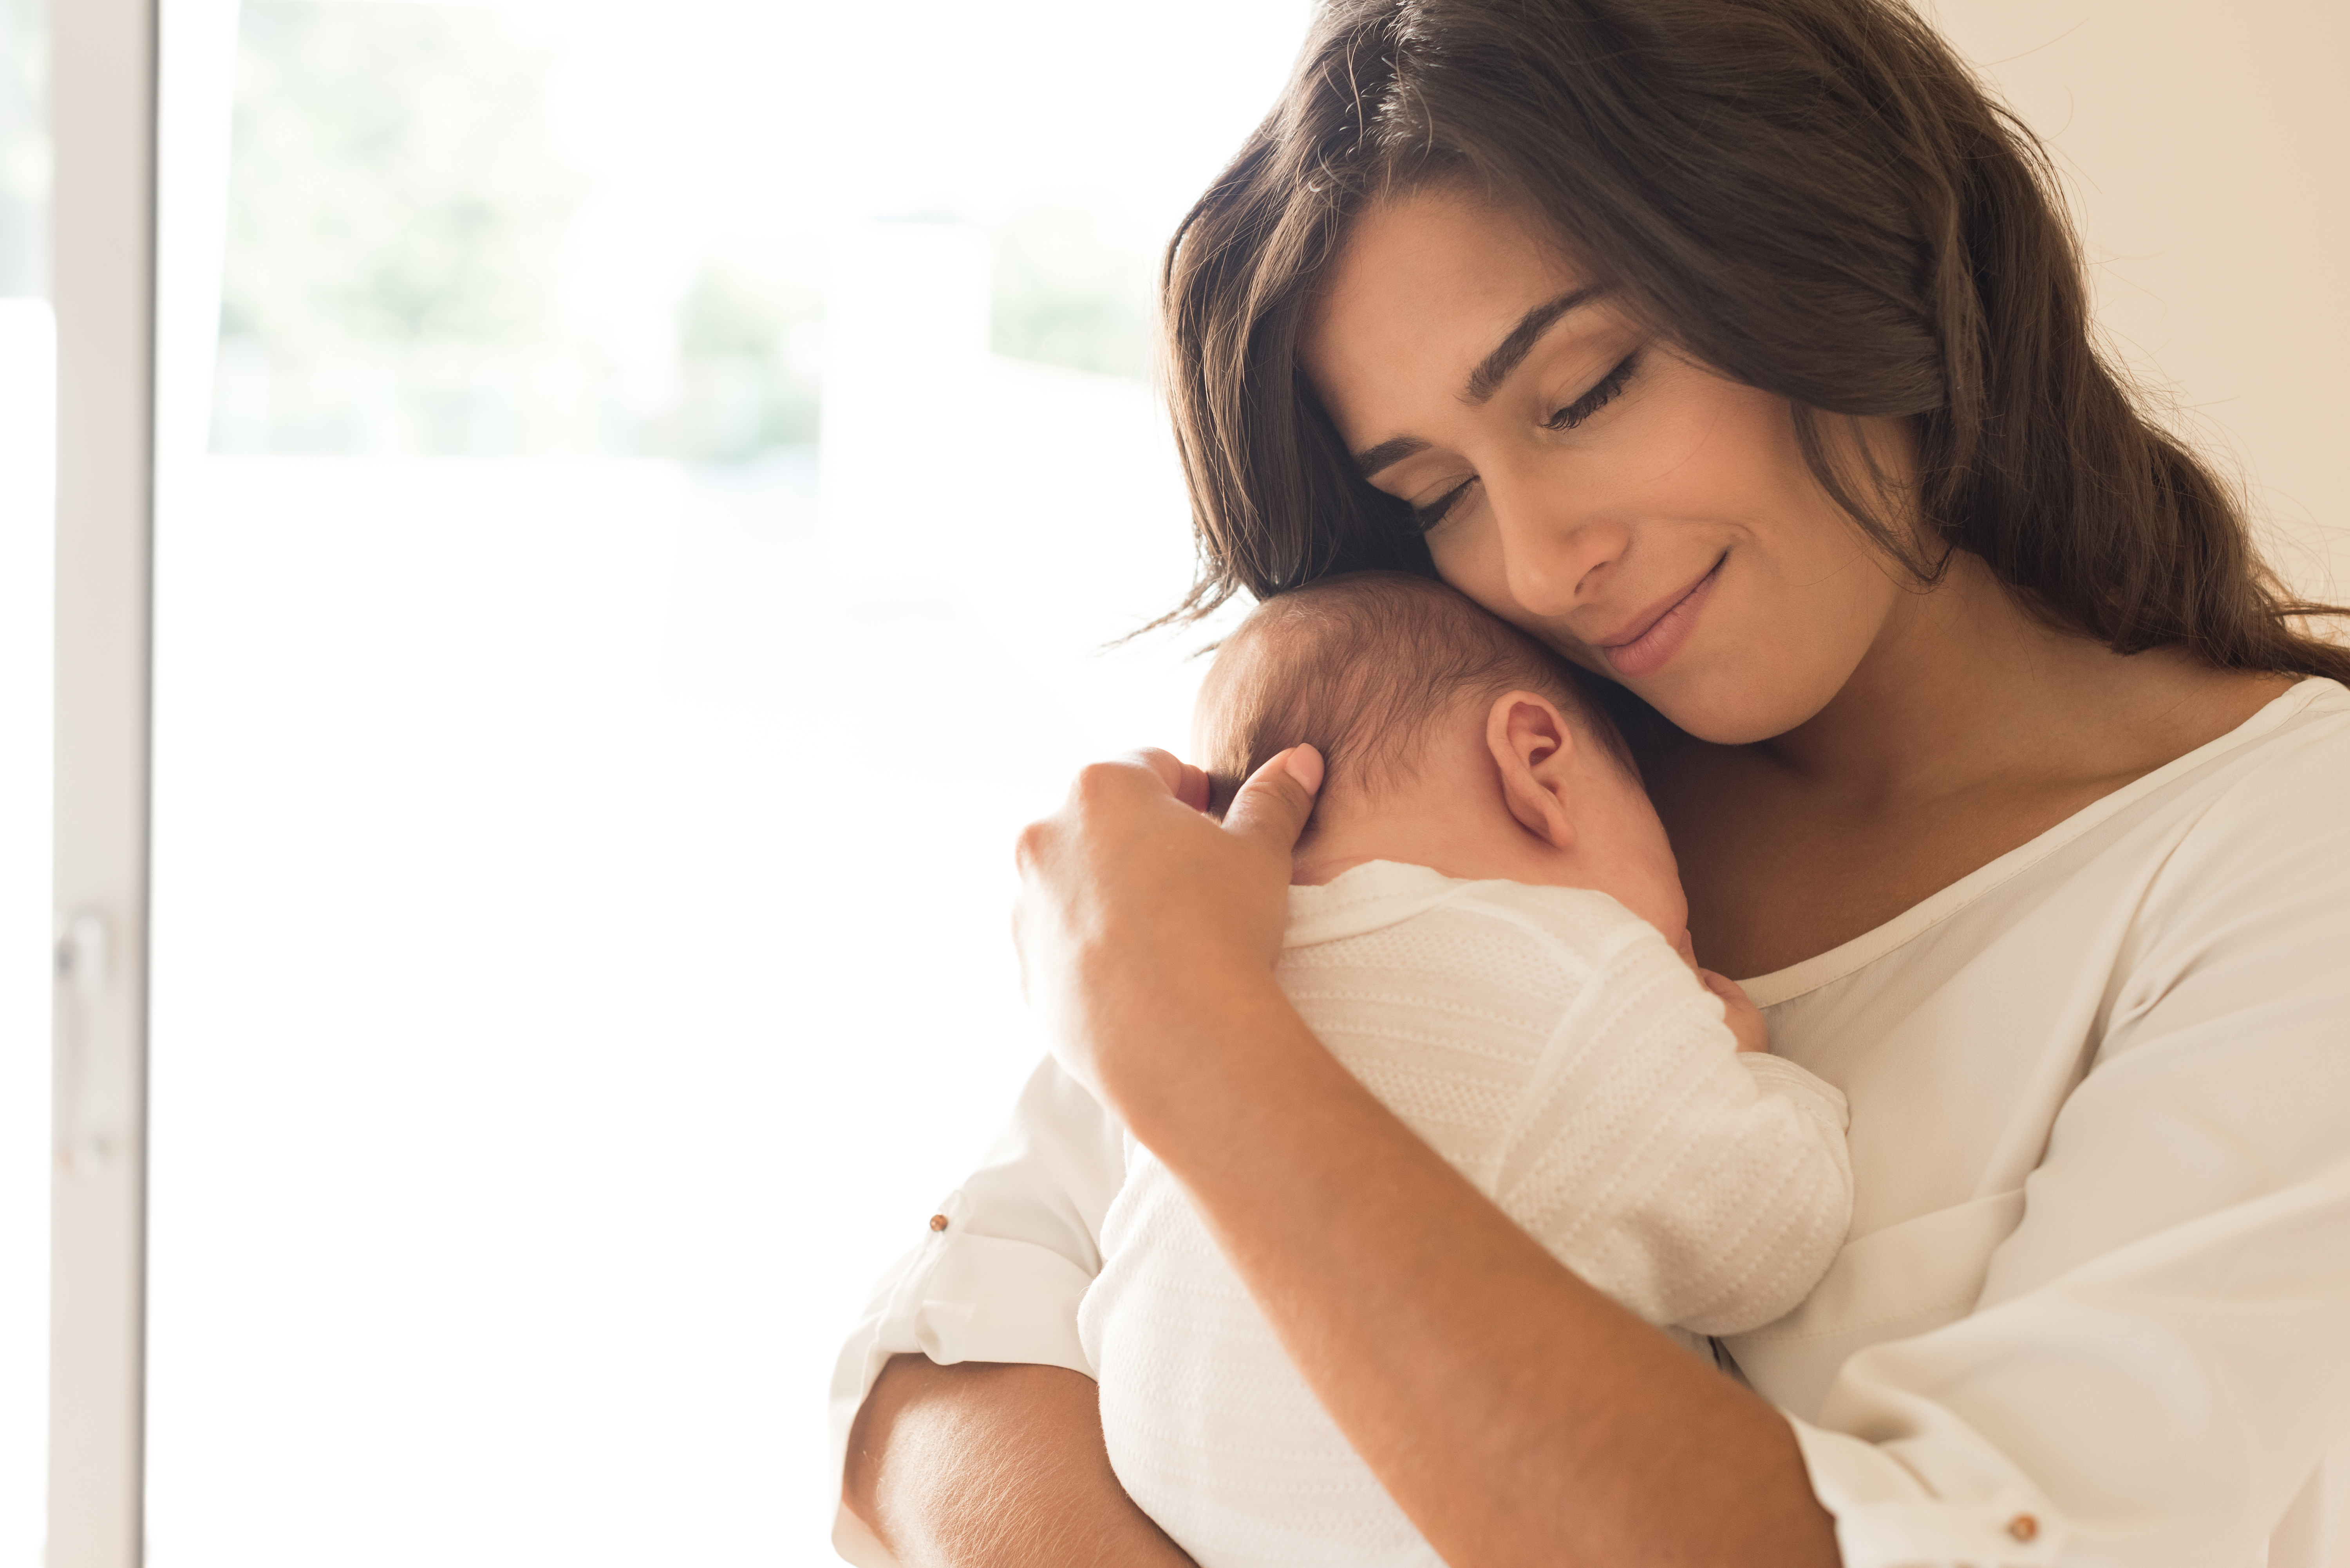 Une femme et son enfant | Source : Shutterstock